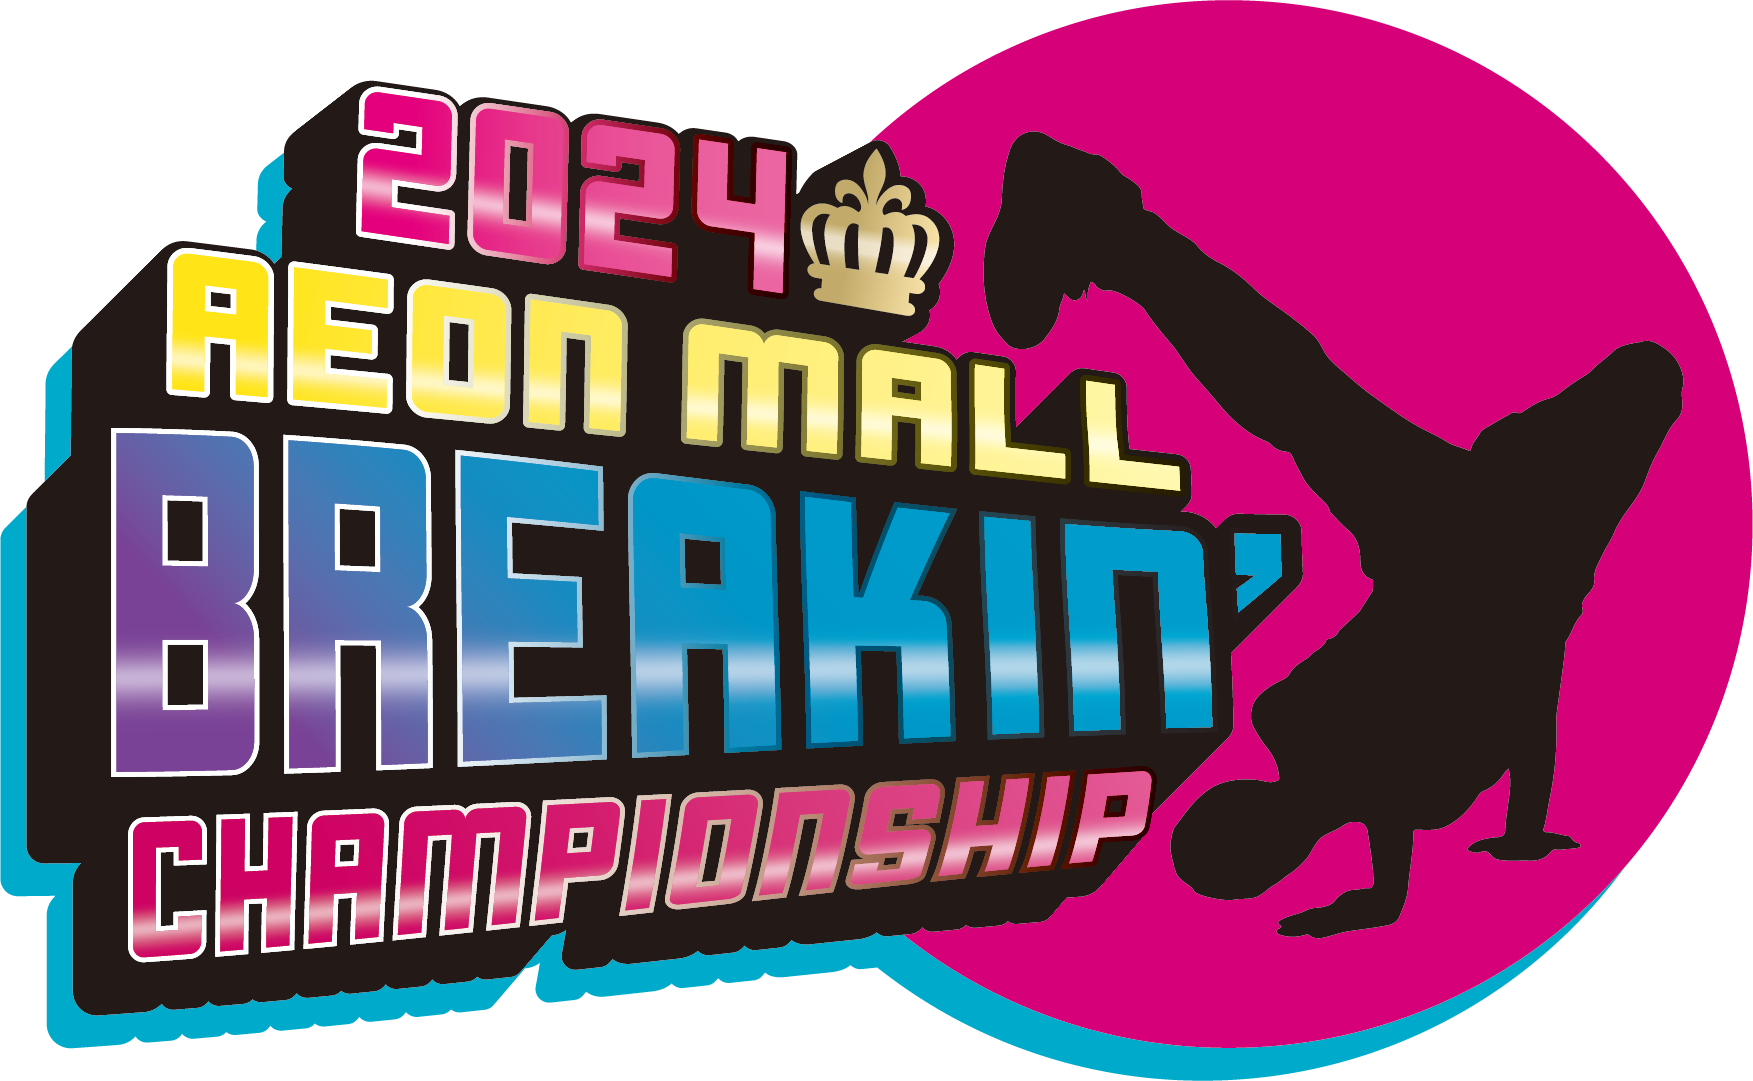 ブレイクダンス大会
『AEON MALL BREAKIN’ CHAMPIONSHIP 2024』
京滋北陸エリアのイオンモール12施設で開催！